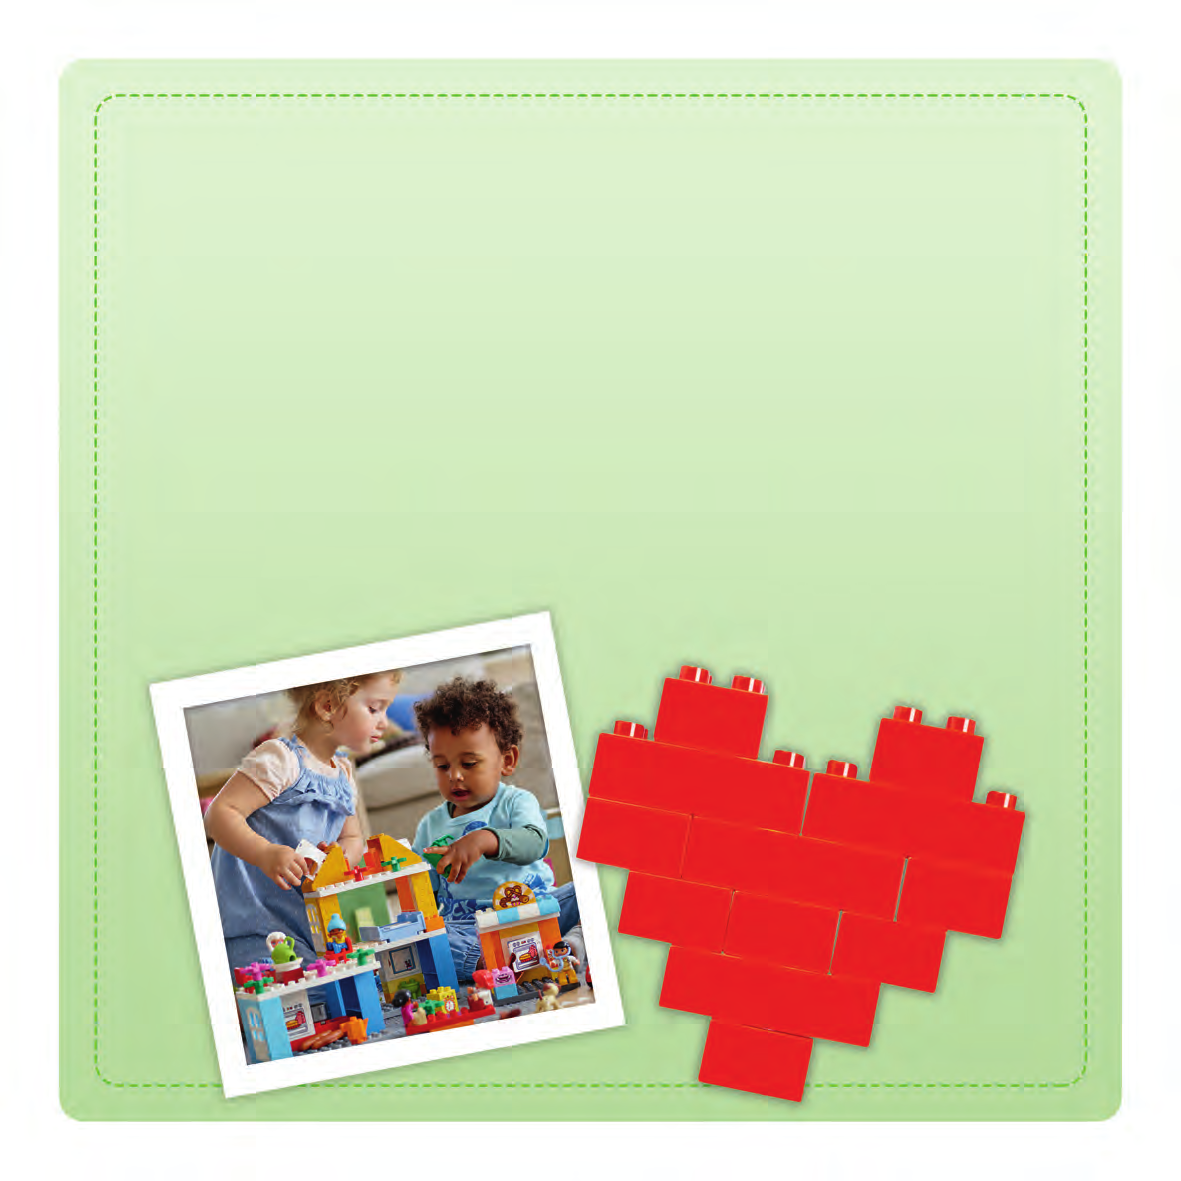 MAŁY ZESTAW LEGO DUPLO POTRAFI NAPRAWDĘ WIELE ROZWIJA PRECYZYJNE ZDOLNOŚCI MOTORYCZNE Klocki LEGO DUPLO są duże i bezpieczne.